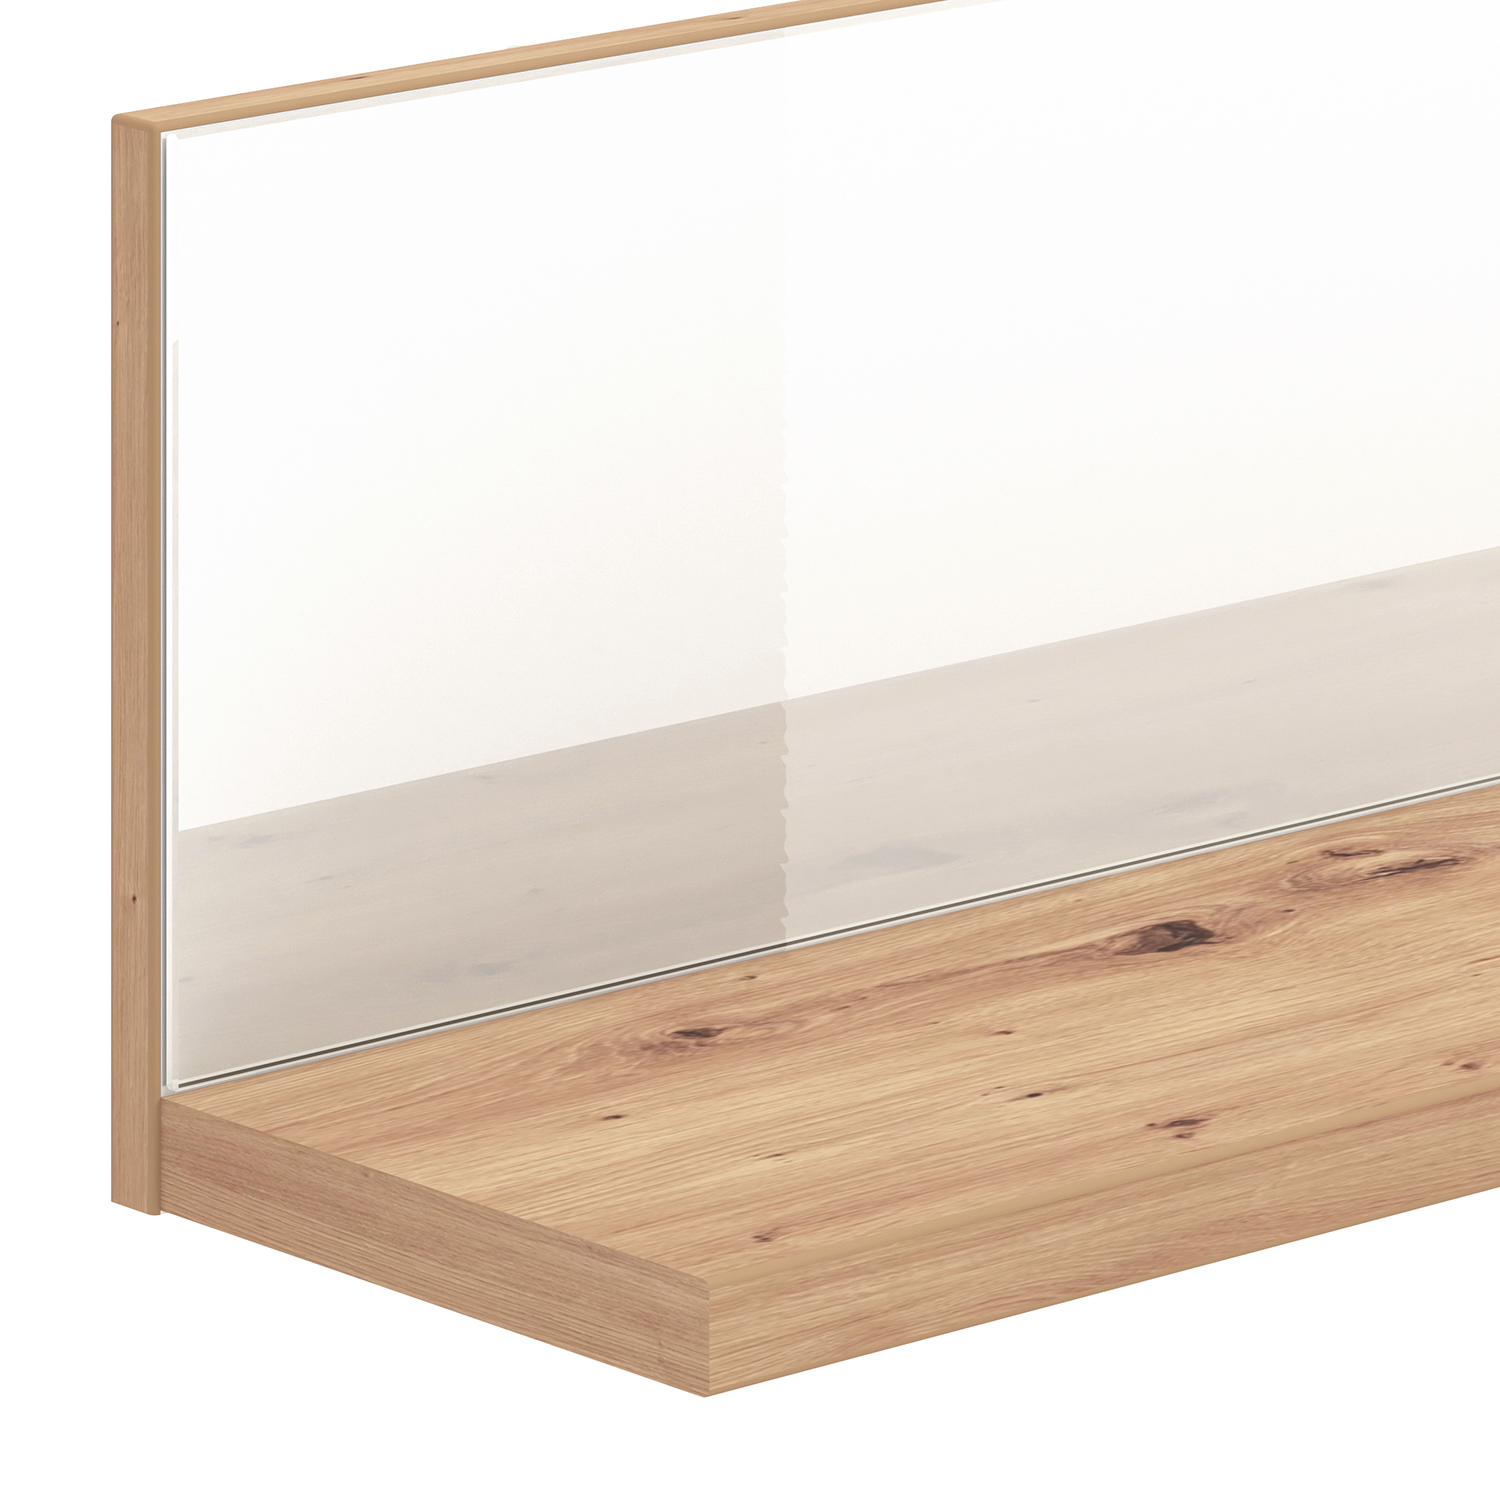 Wohnwand Schrankwand Anbauwand Wohnzimmer-Set 4 tlg. Modern Eiche Holz Glas Weiß Hochglanz